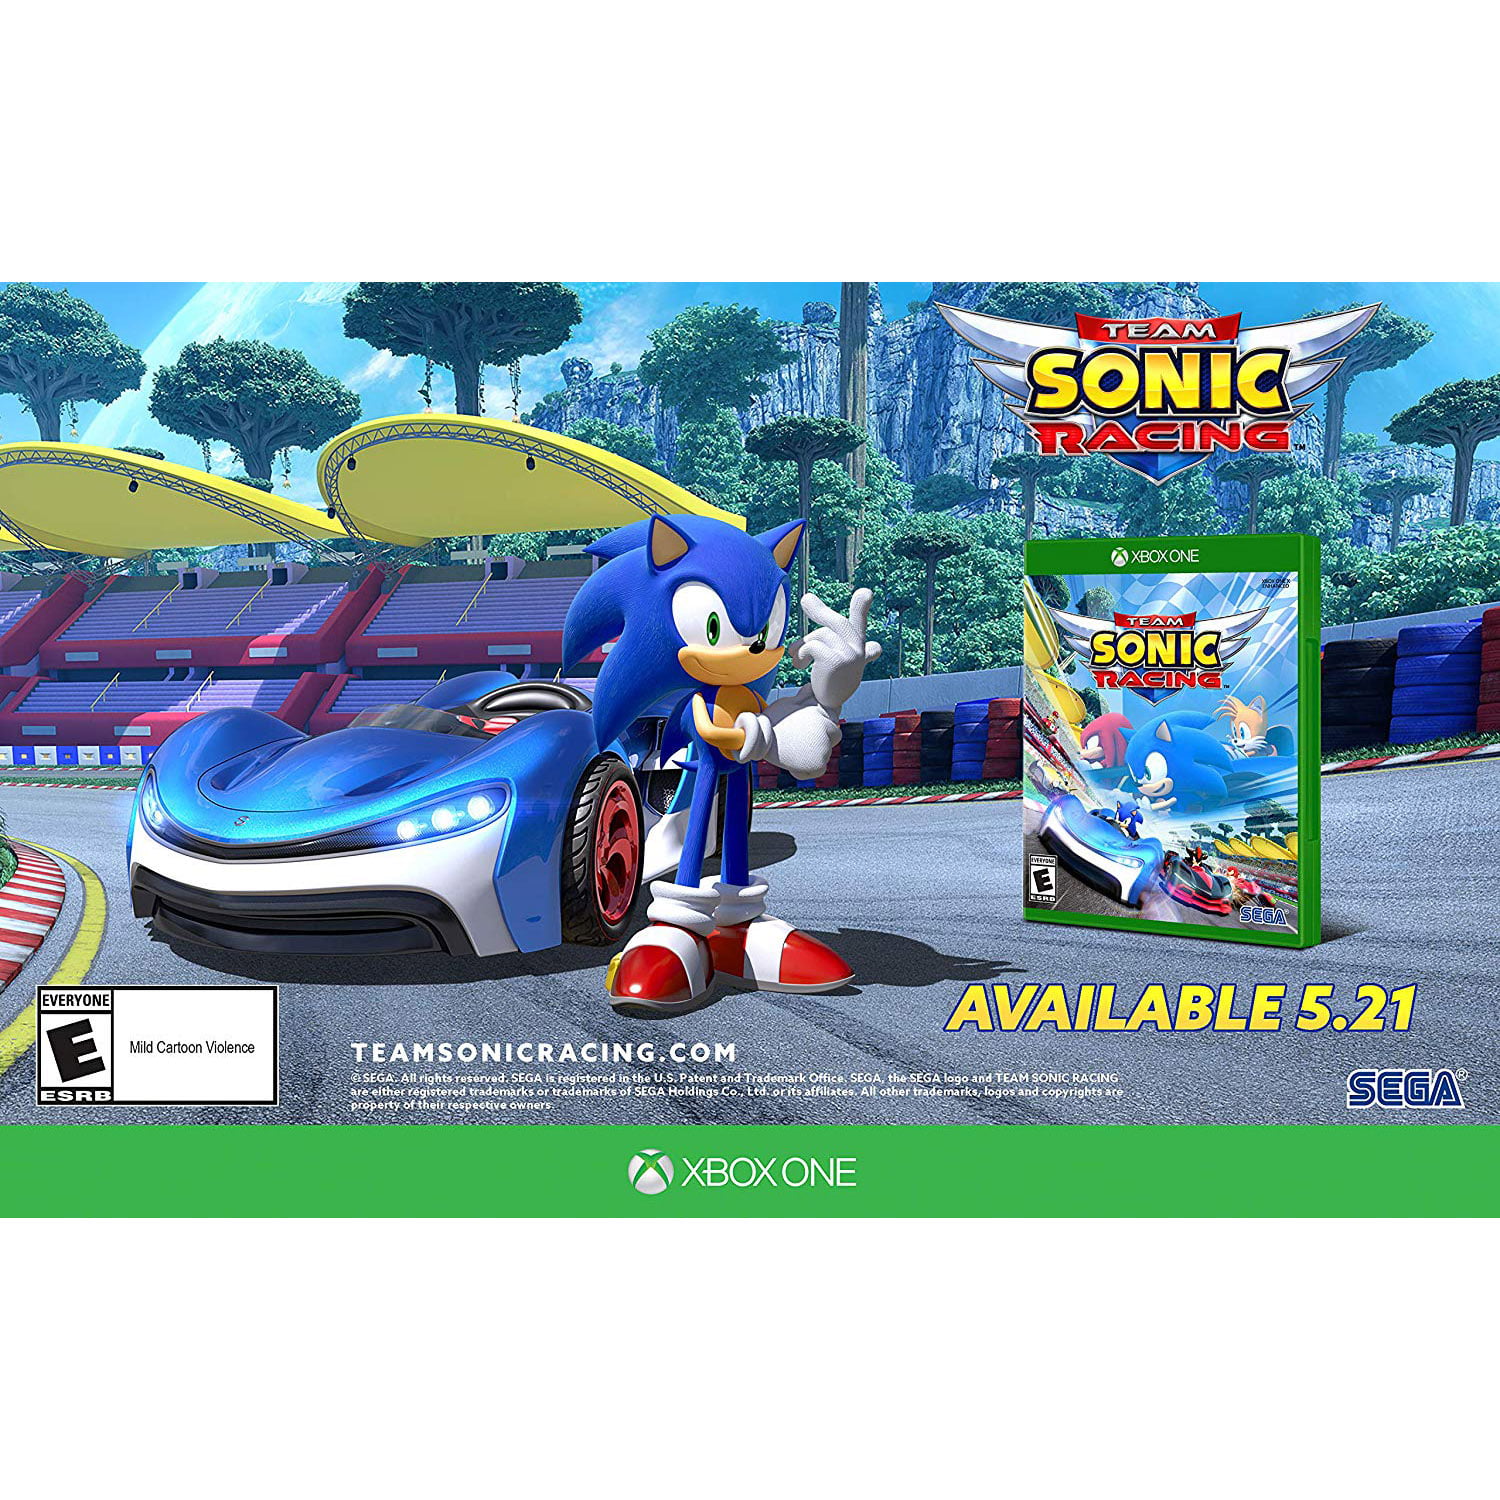 Análise: Sonic Team Racing (Switch) podia estar no pódio, mas